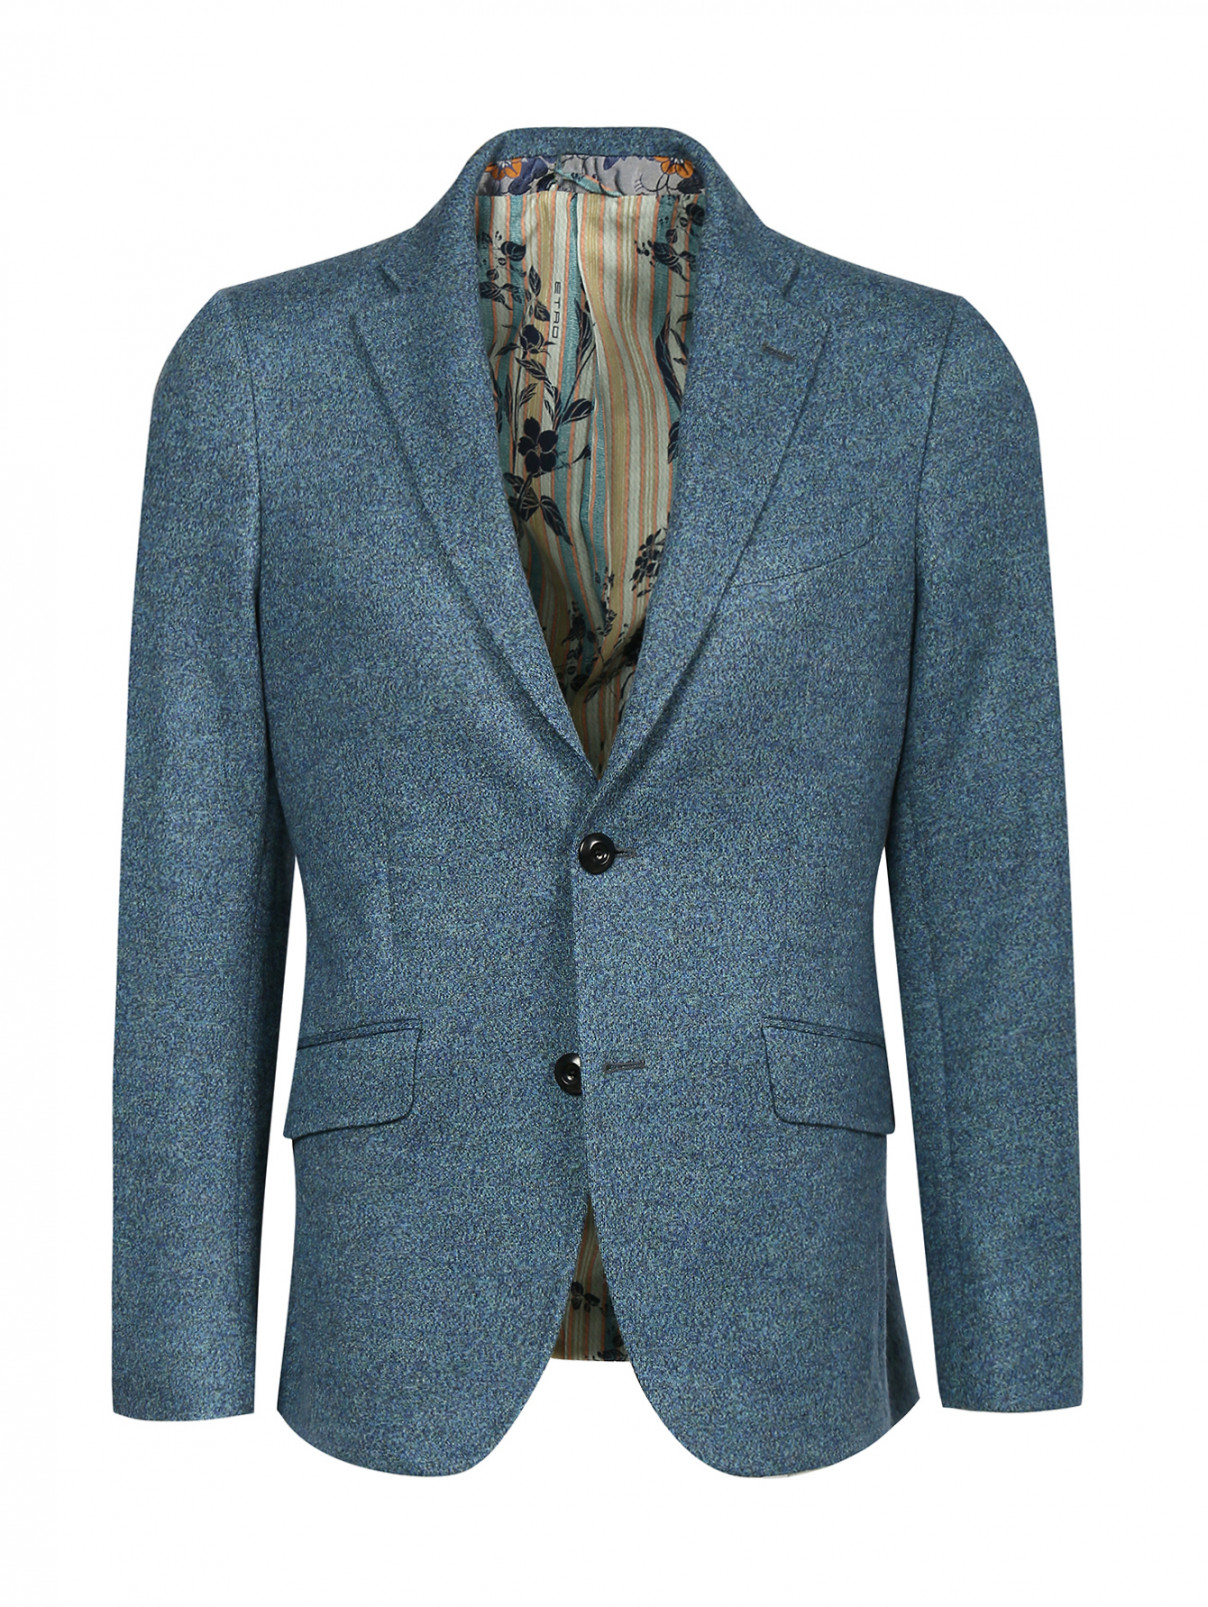 Пиджак однобортный из шерсти Etro  –  Общий вид  – Цвет:  Синий